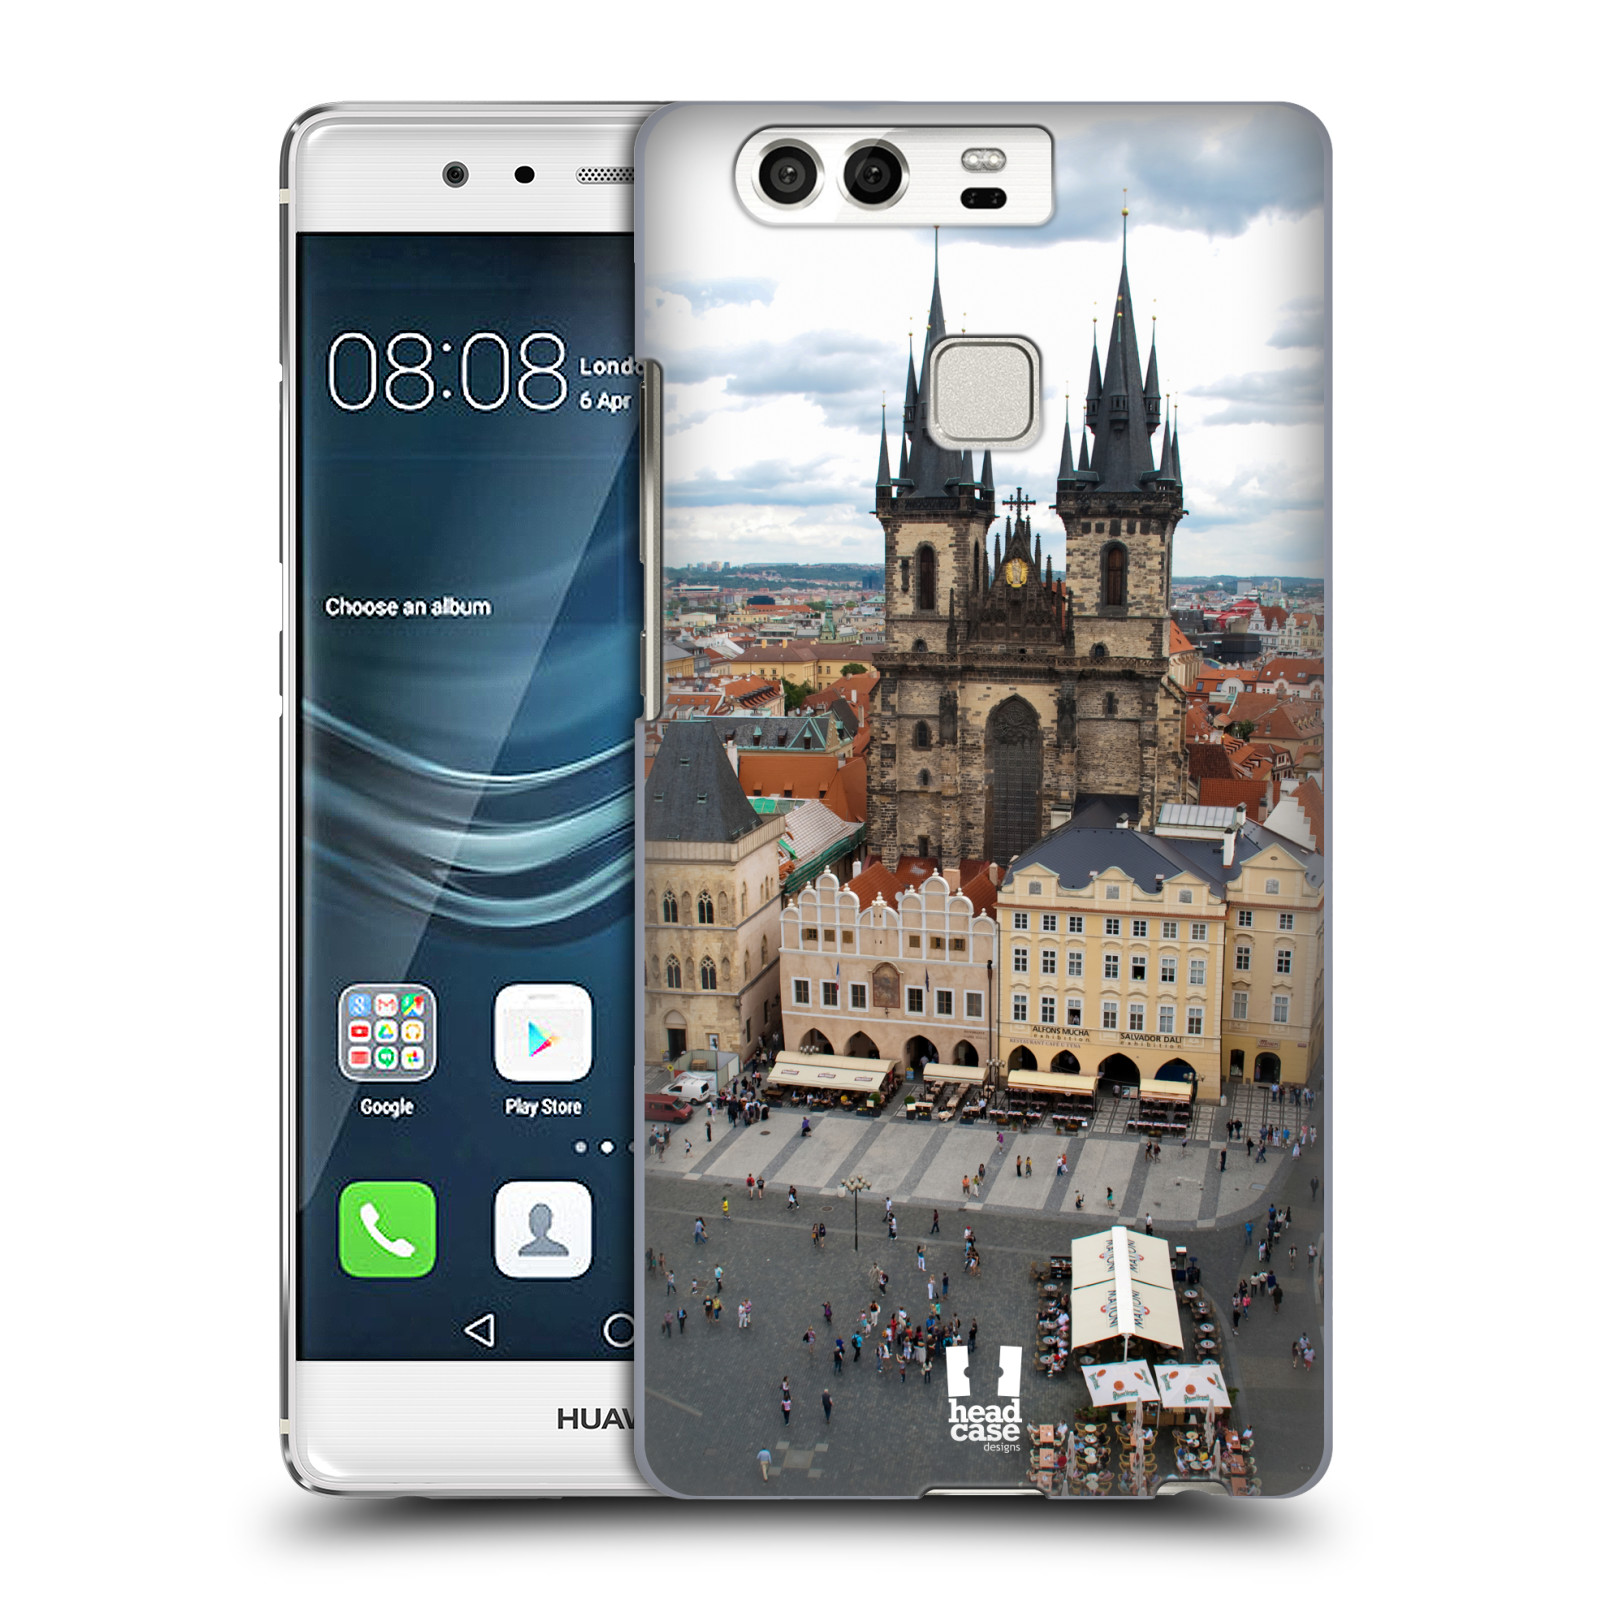 HEAD CASE plastový obal na mobil Huawei P9 / P9 DUAL SIM vzor Města foto náměstí ČESKÁ REPUBLIKA, PRAHA, STAROMĚSTSKÉ NÁMĚSTÍ